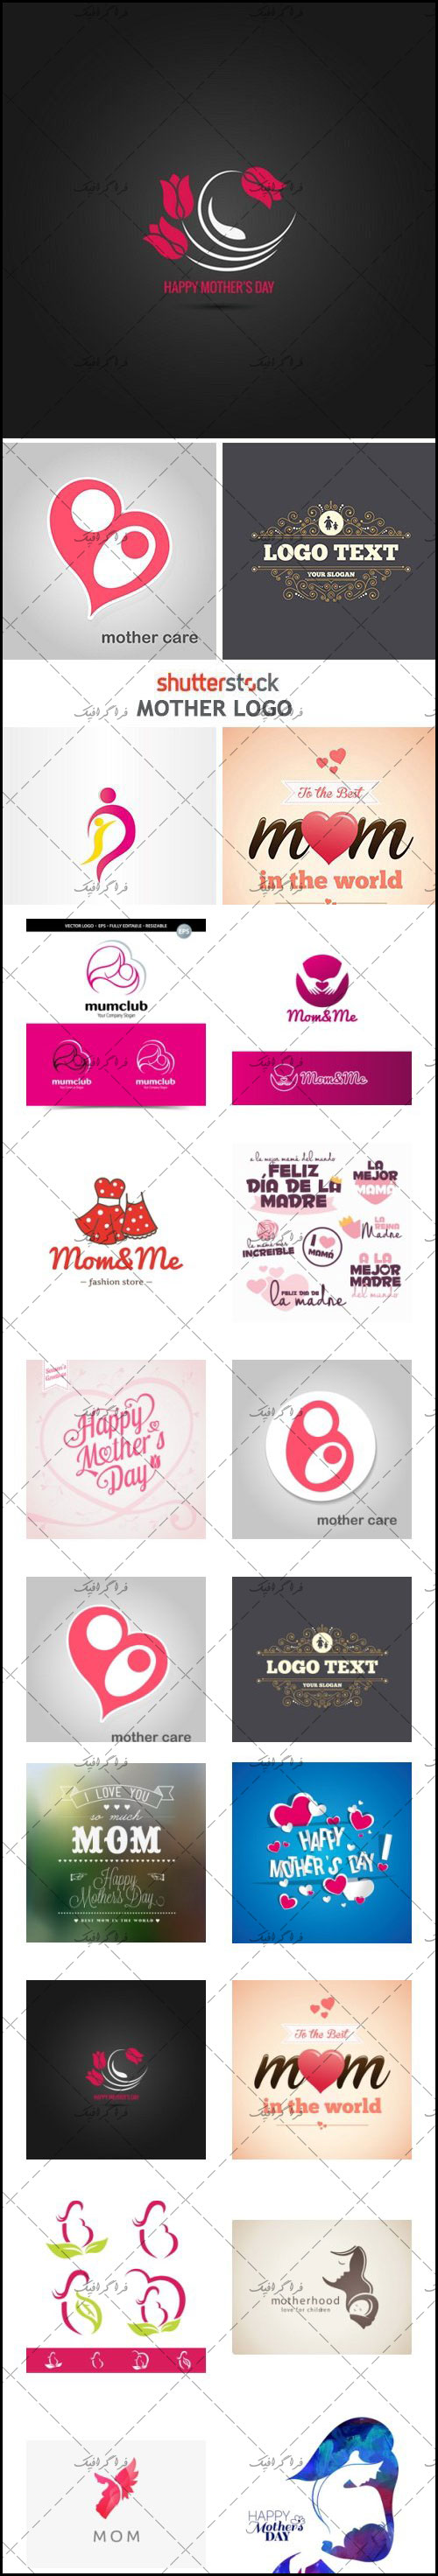 دانلود لوگو های روز مادر - Mother Logos